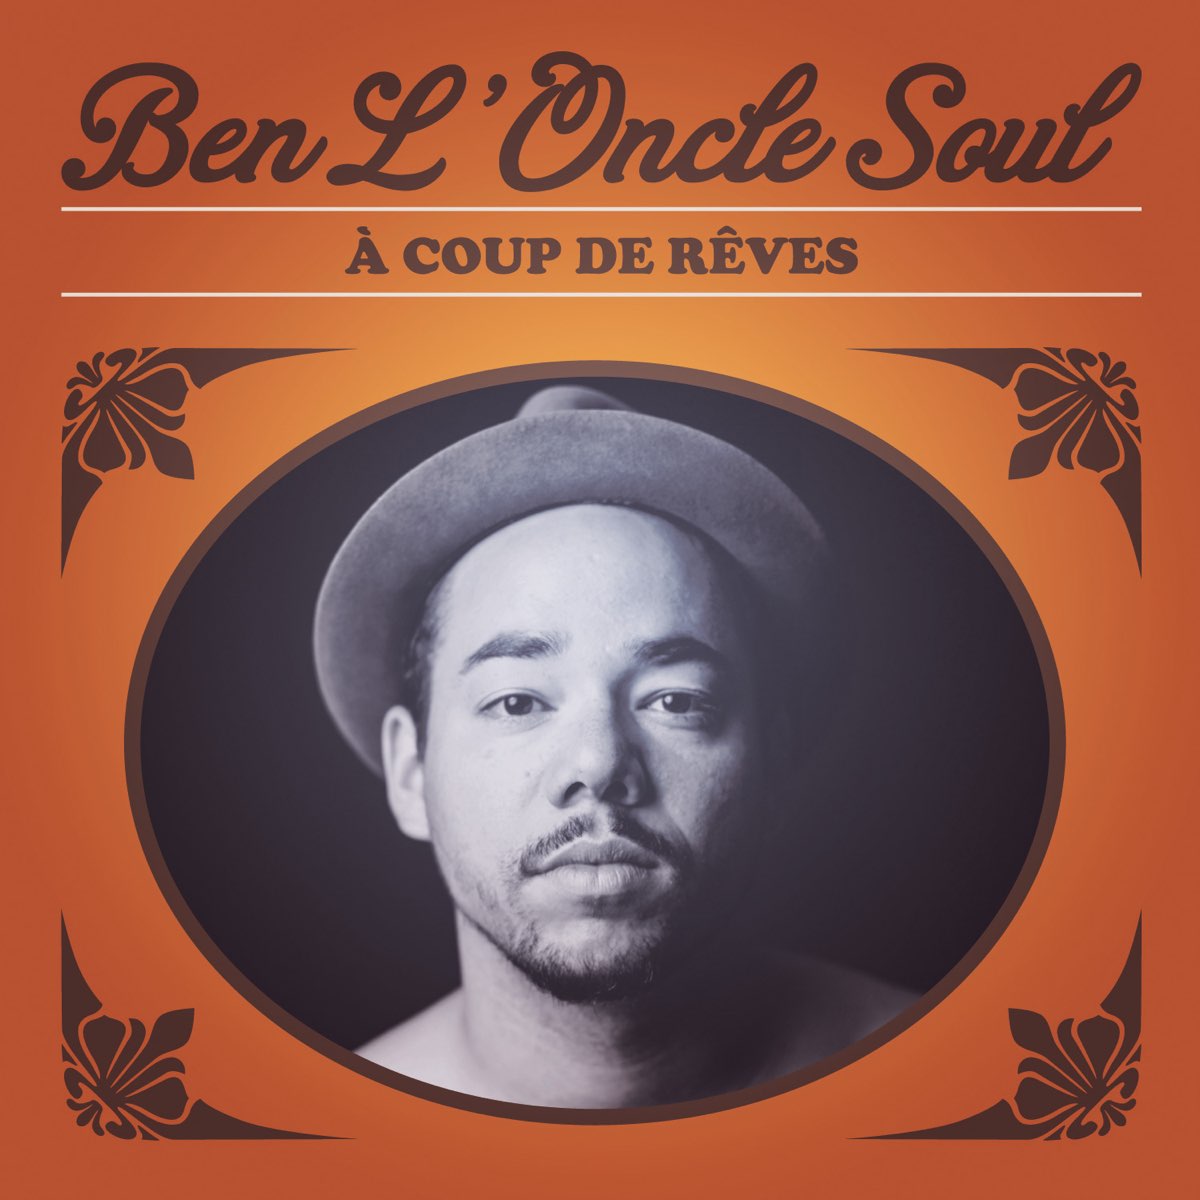 A coup de rêves by Ben l'Oncle Soul on Apple Music